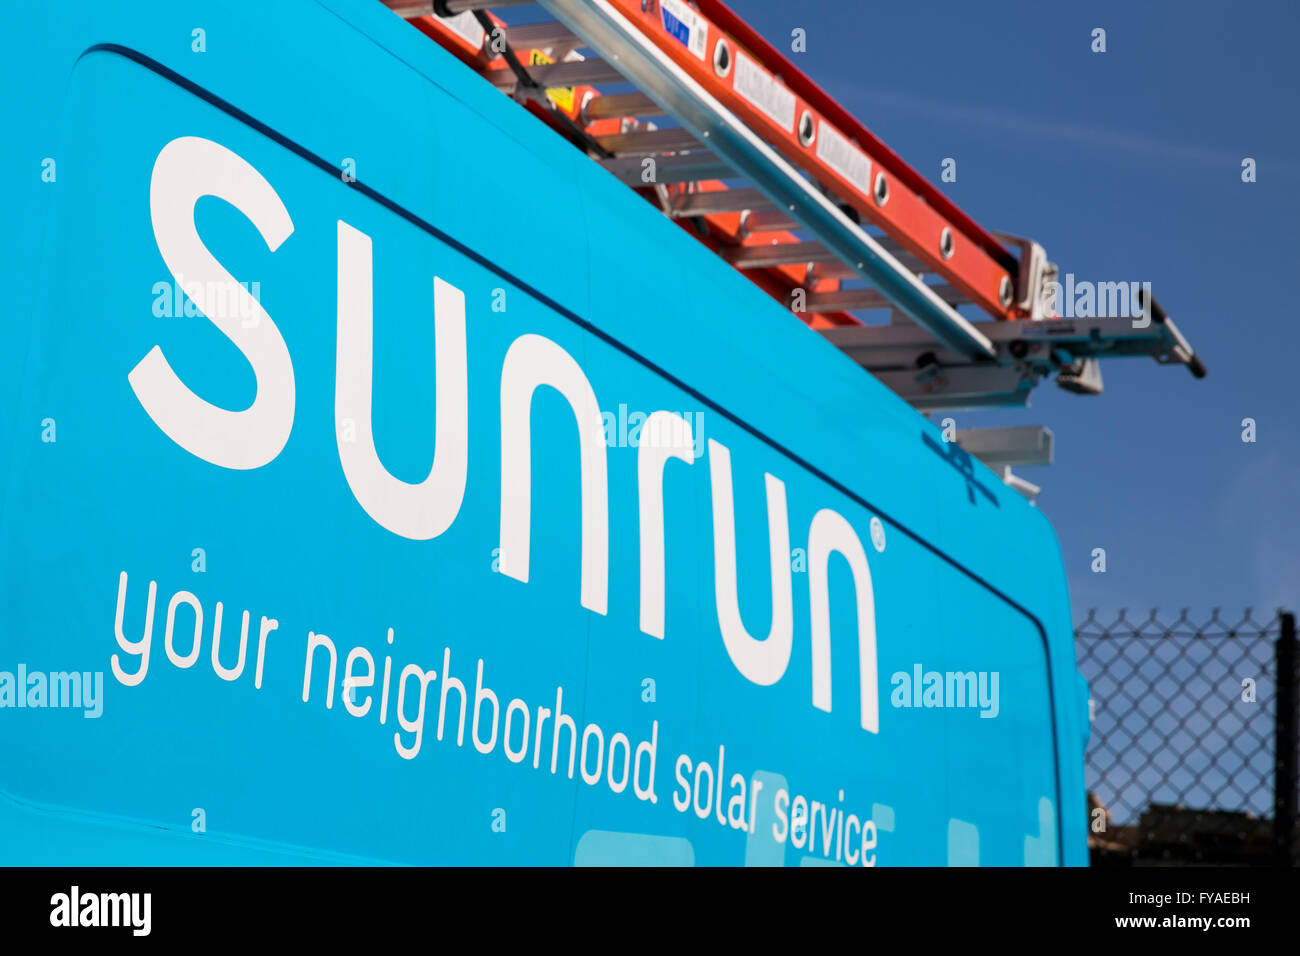 Vans mit Logos von der solar-Anbieter Sunrun Inc. in Linthicum Heights, Maryland am 10. April 2016 zu arbeiten. Stockfoto